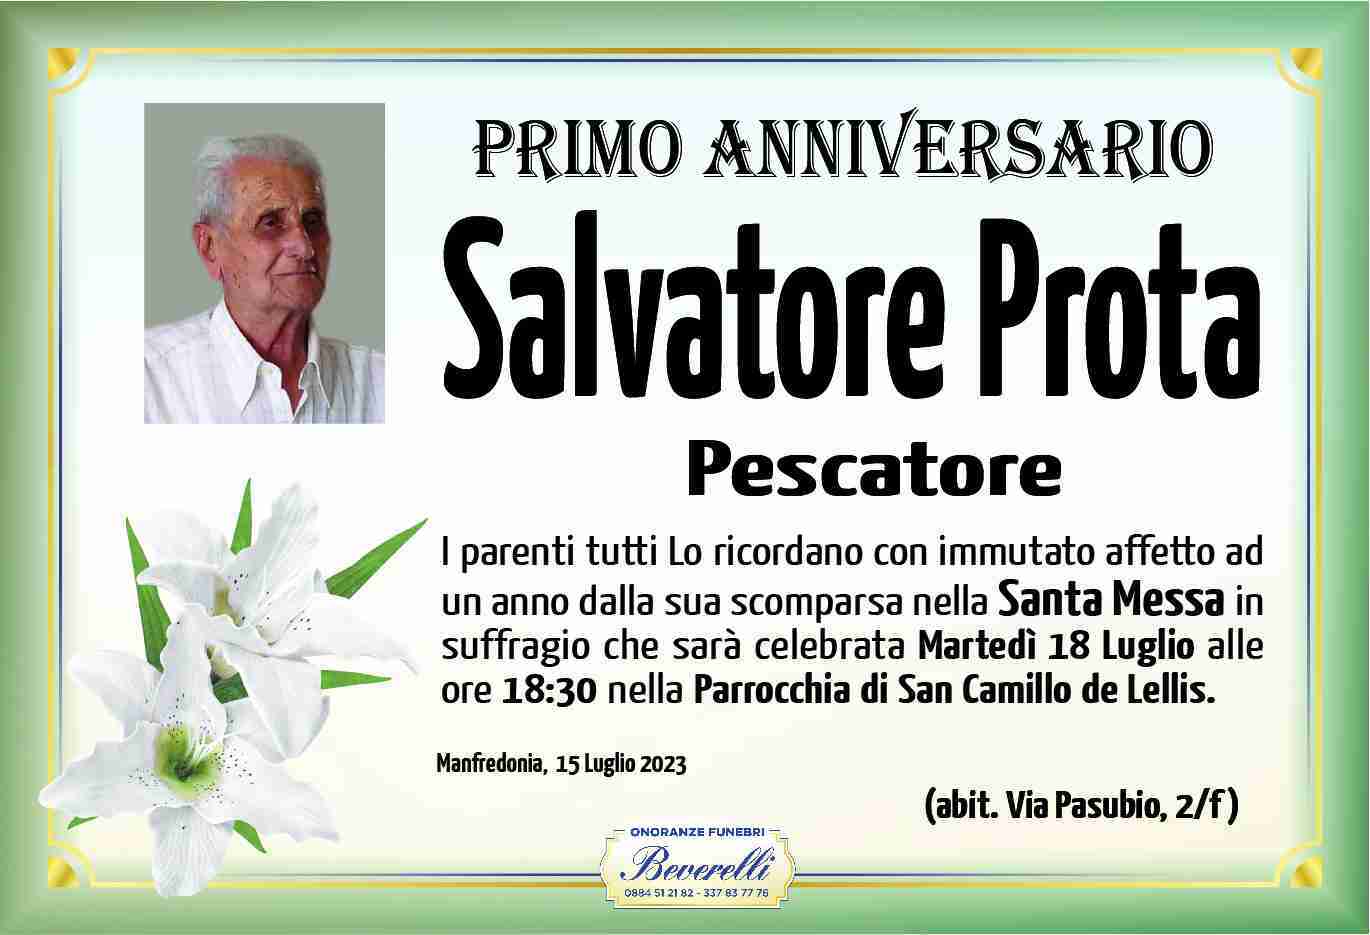 Salvatore Prota